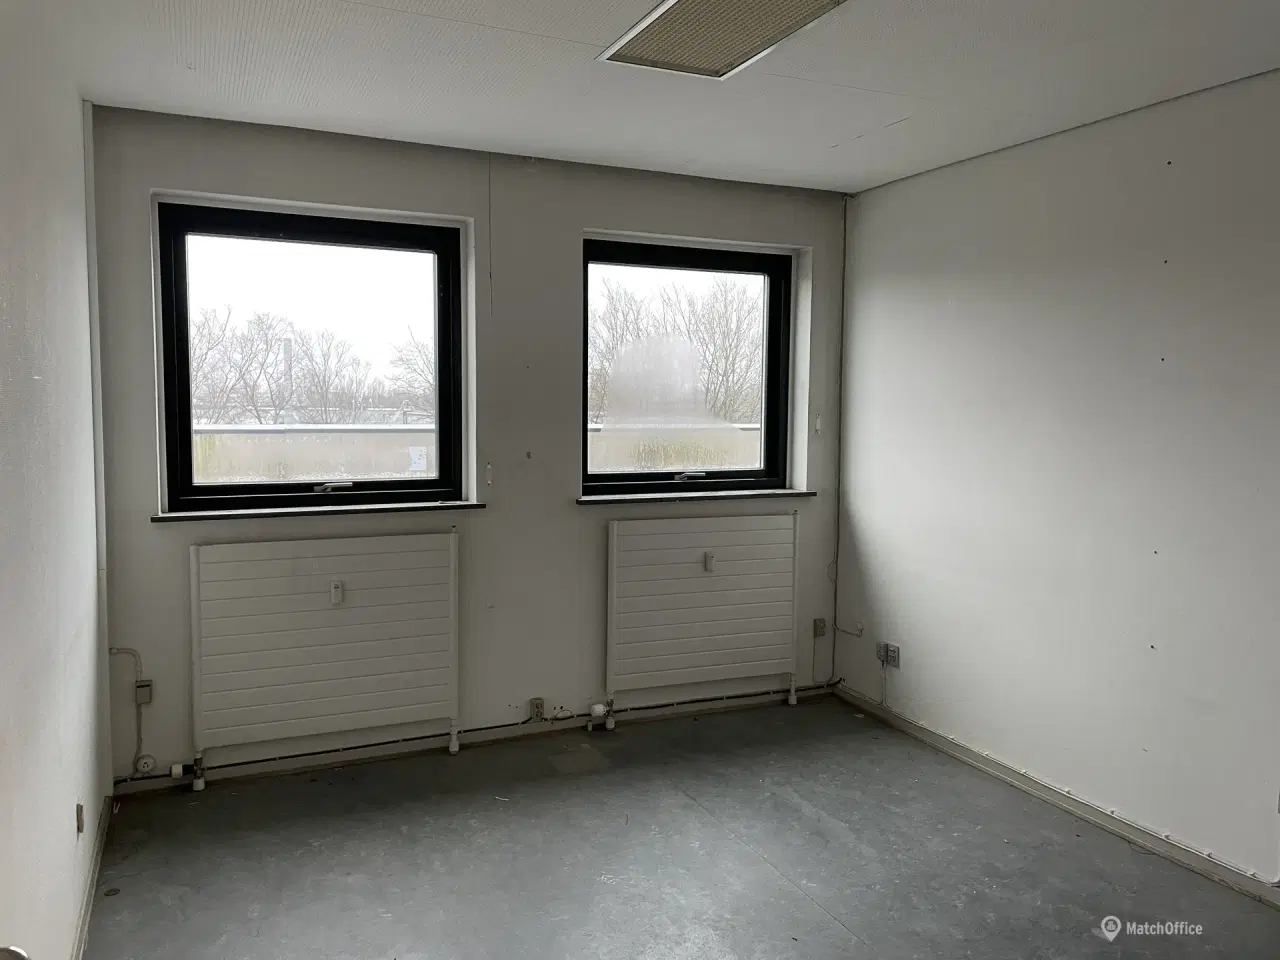 Billede 5 - Kontor / lager på 33 m² udlejes i Herlev